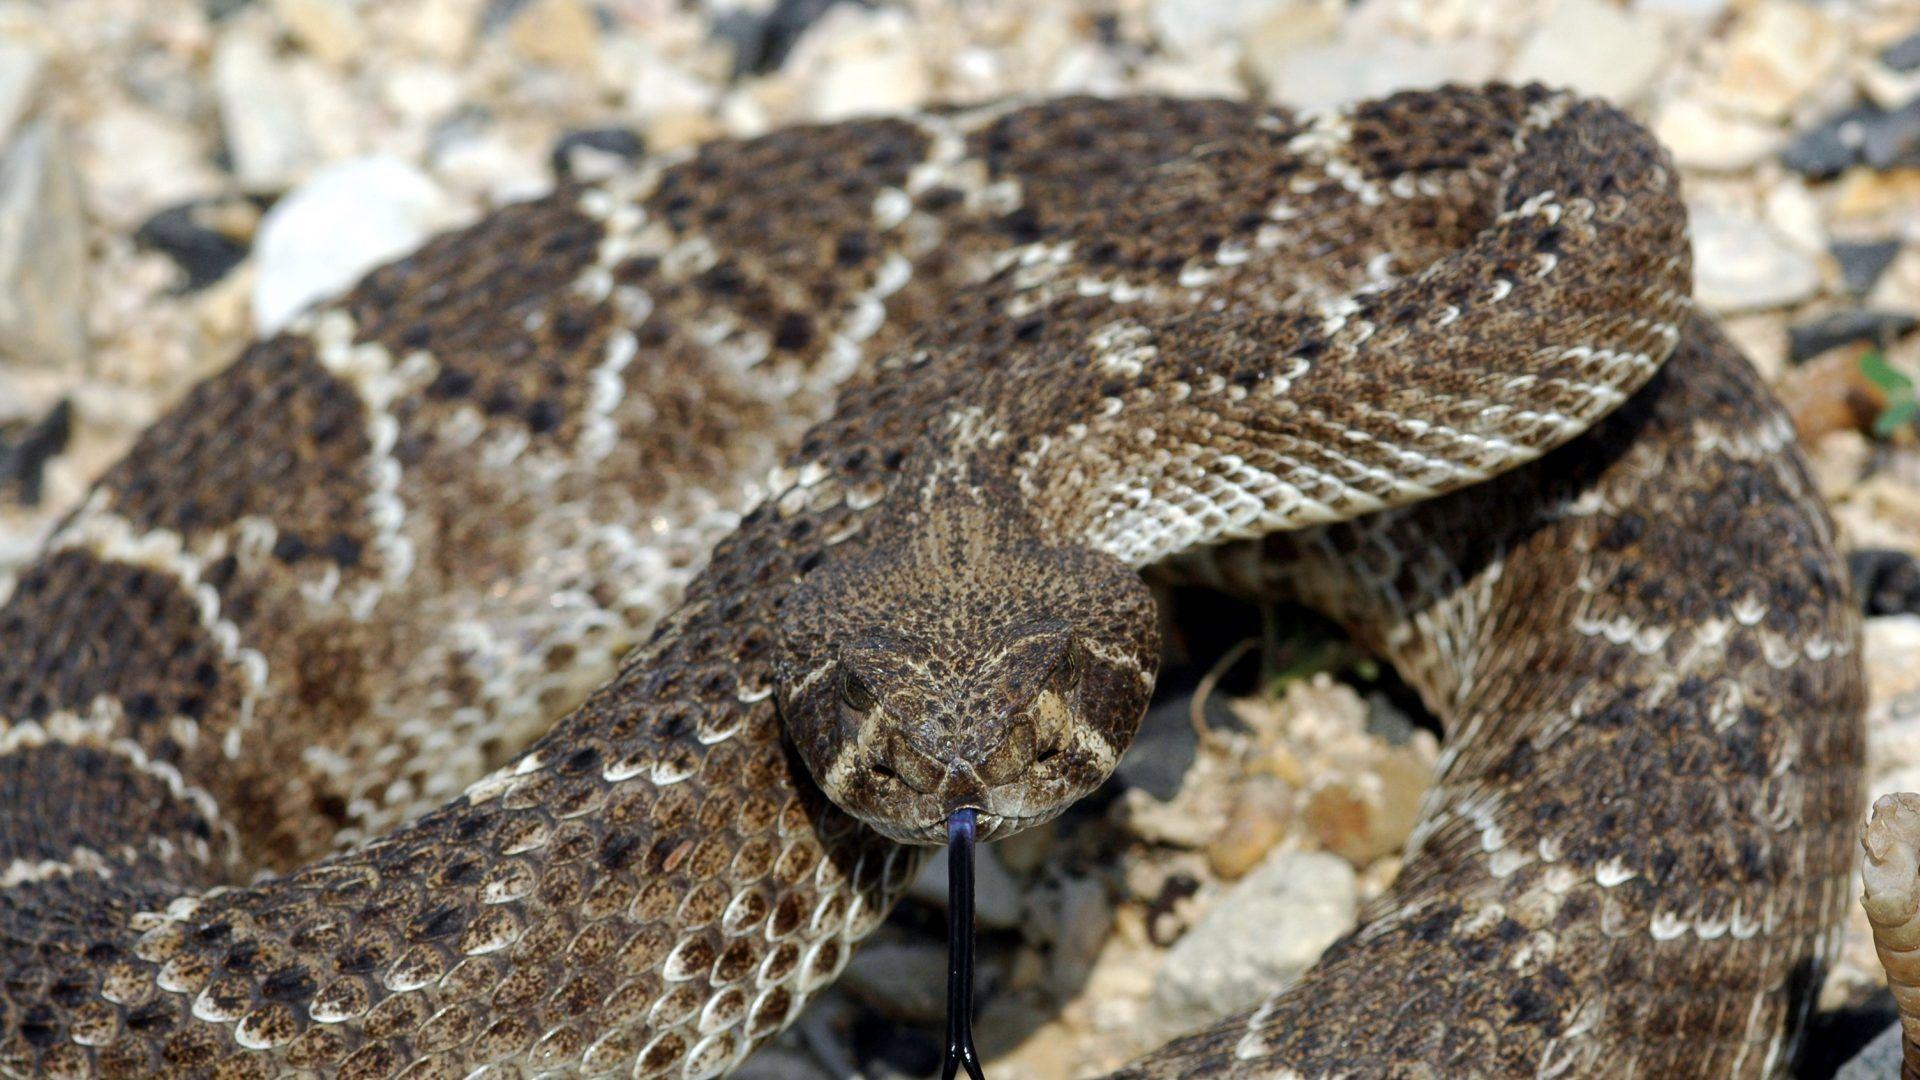 Snakes Tag wallpaper: Predator Snake Snakes Rattlesnake Reptile